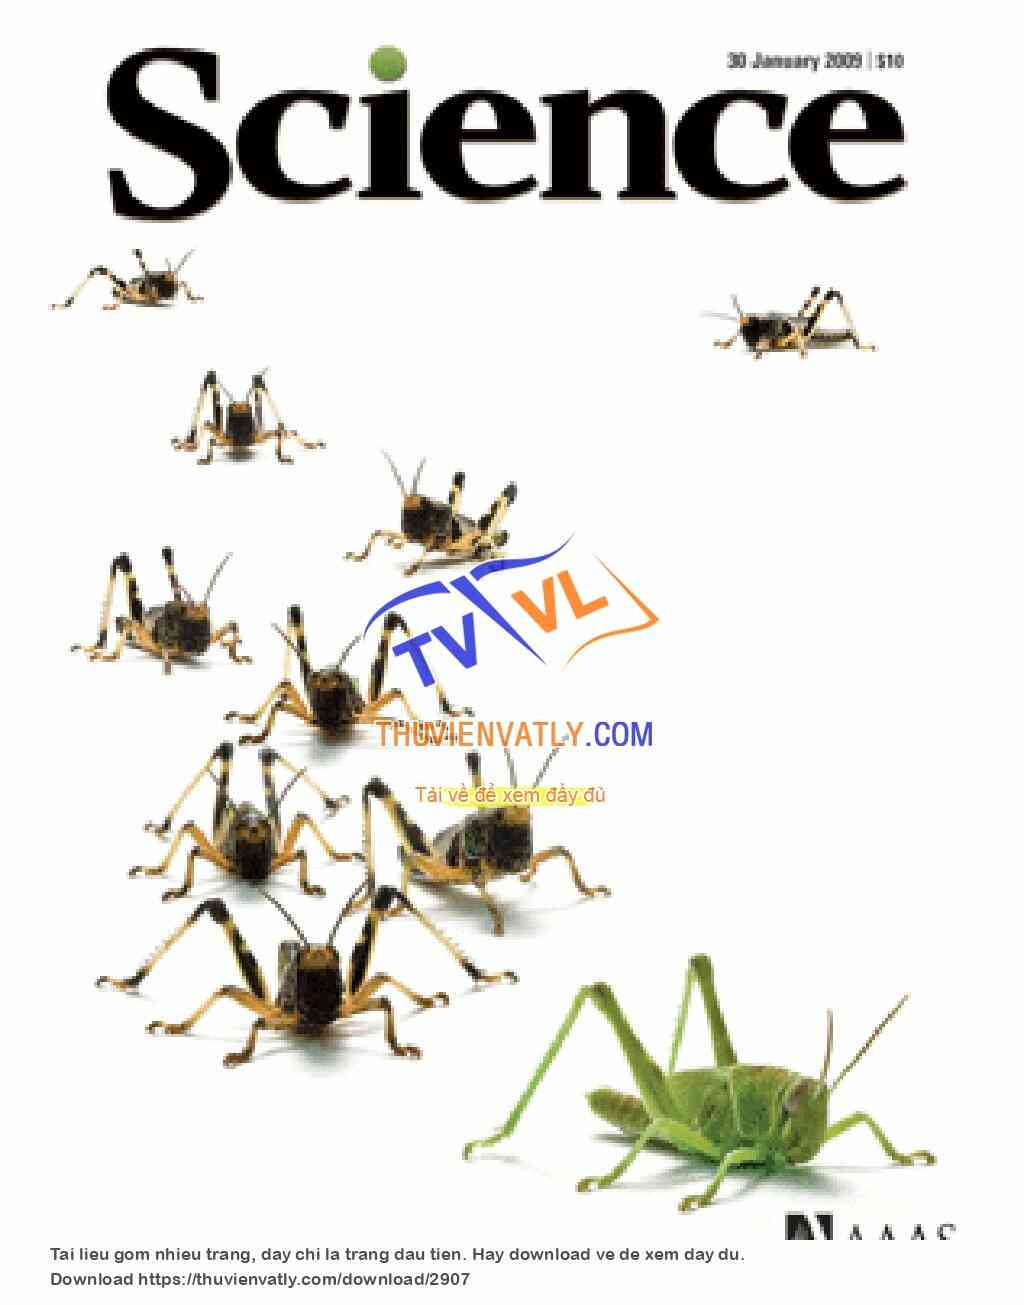 Tạp chí Science, số ngày 30/01/2009